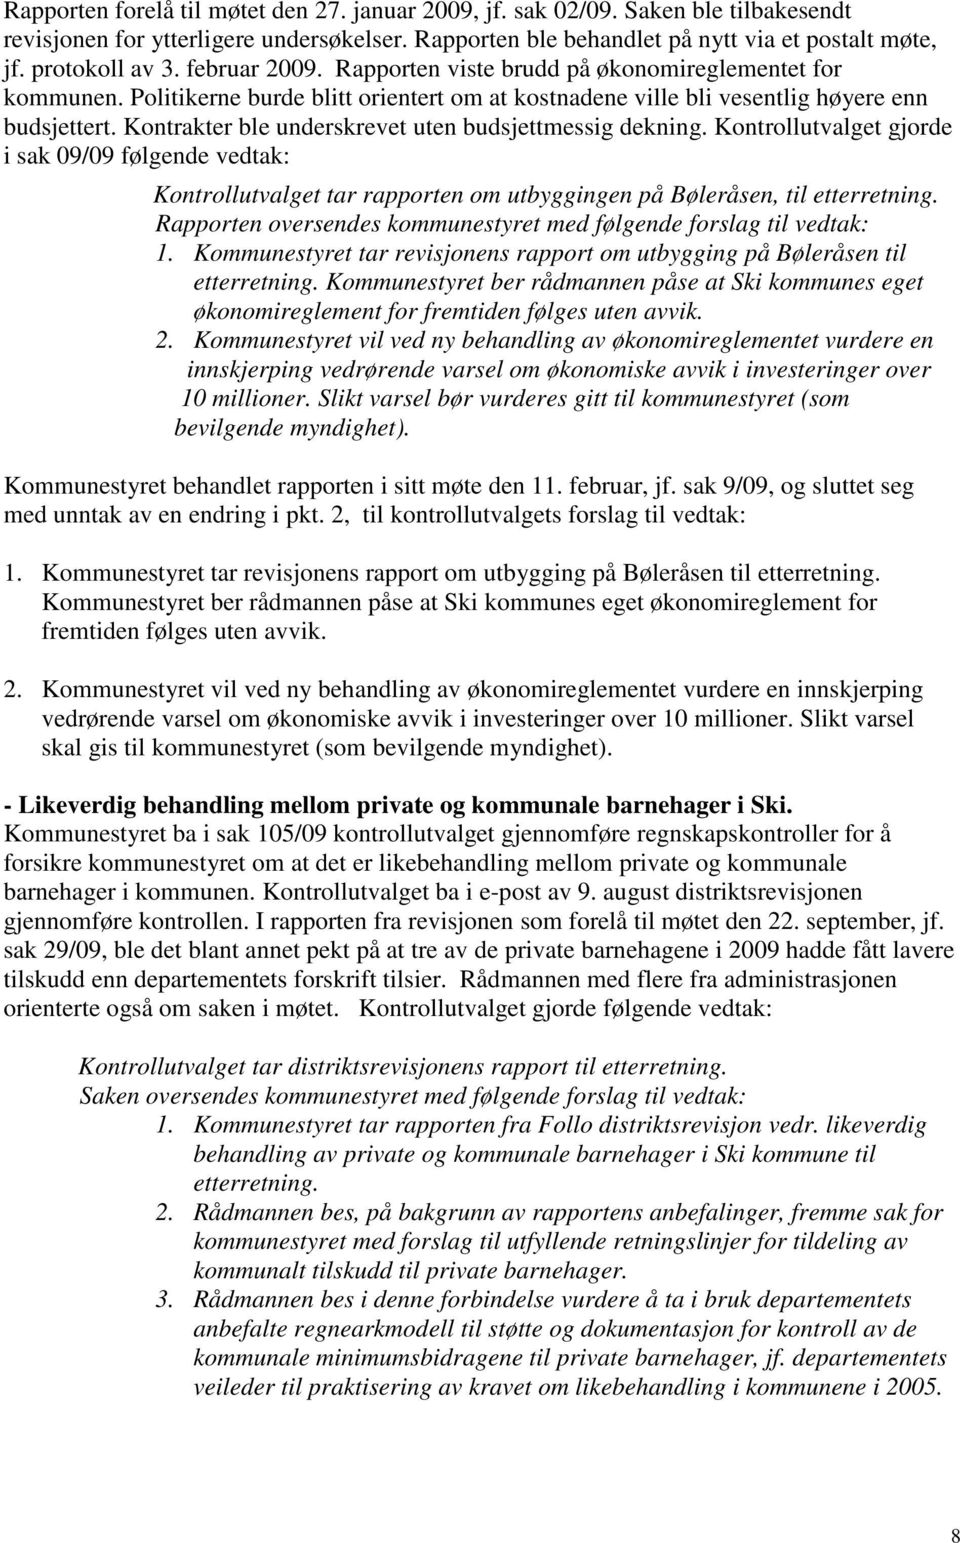 Kontrakter ble underskrevet uten budsjettmessig dekning. Kontrollutvalget gjorde i sak 09/09 følgende vedtak: Kontrollutvalget tar rapporten om utbyggingen på Bøleråsen, til etterretning.